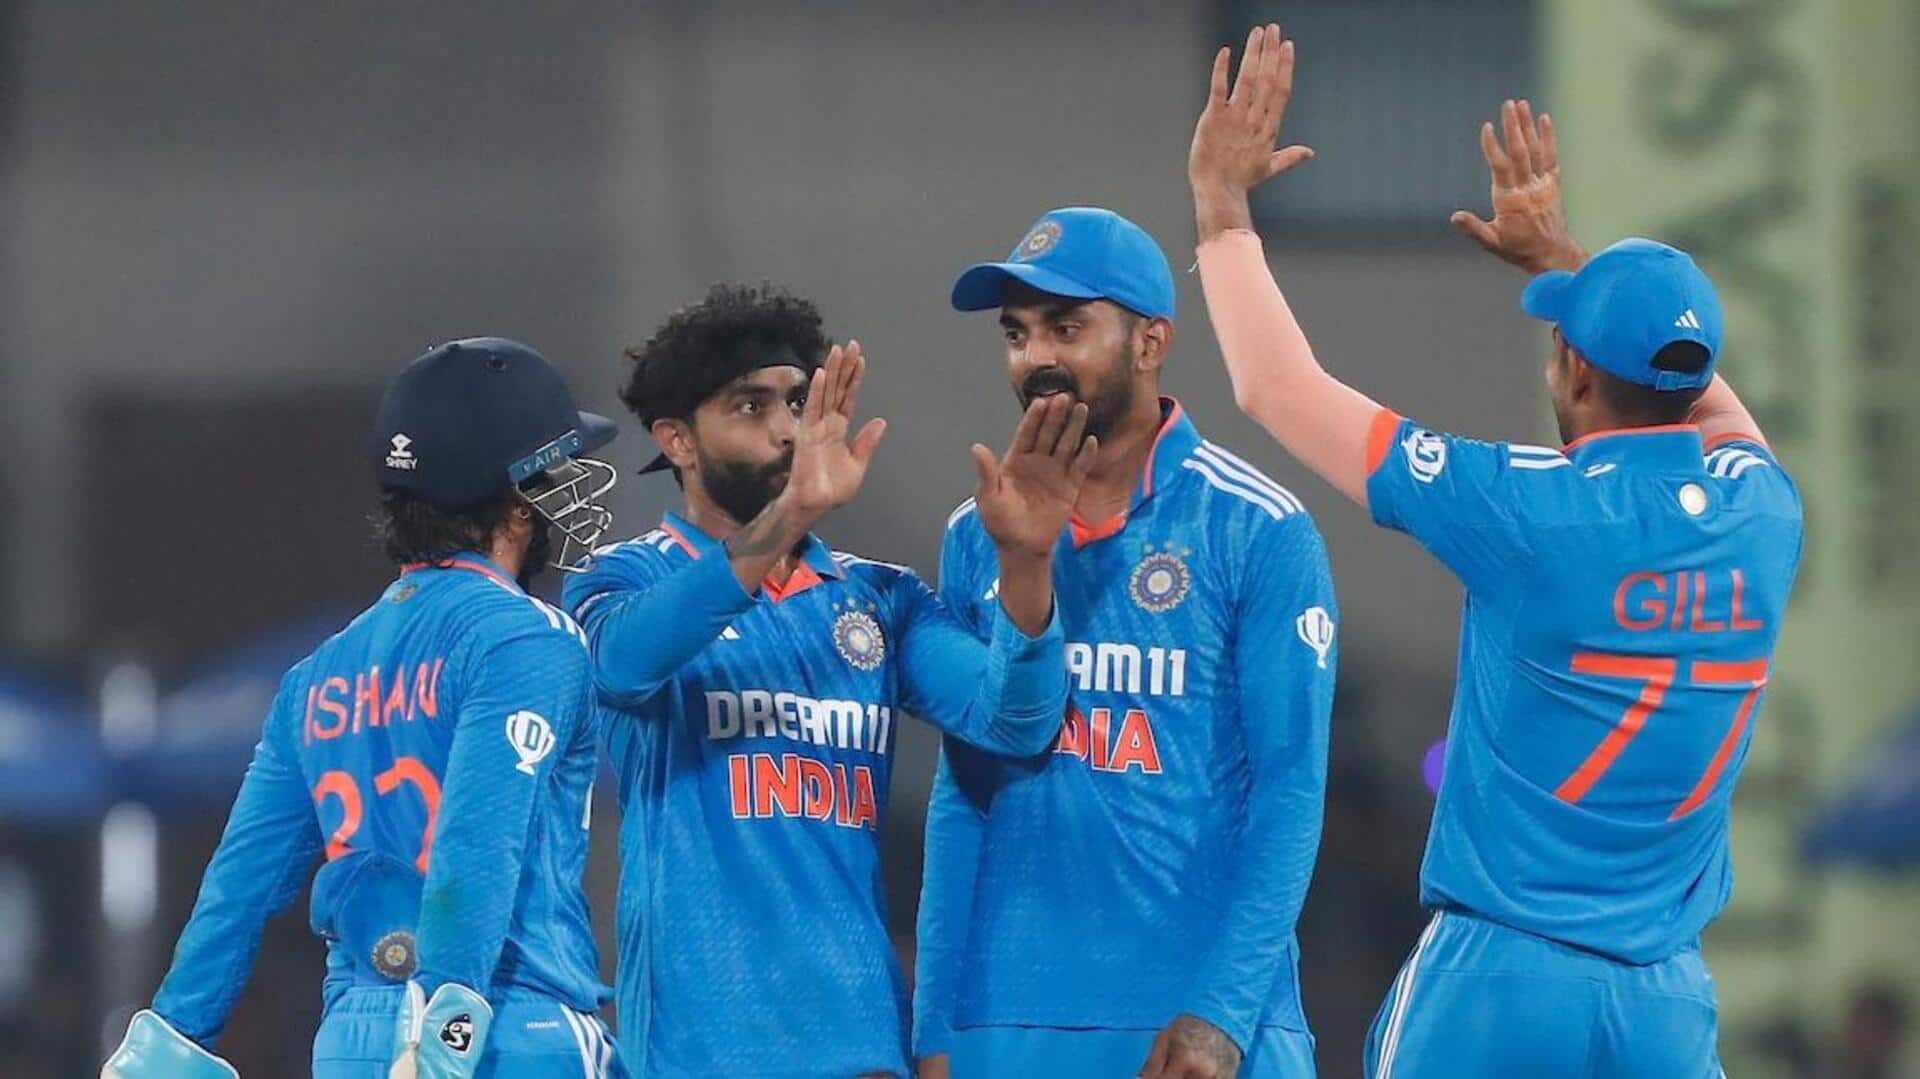 तीसरा वनडे: भारत के खिलाफ ऑस्ट्रेलिया ने टॉस जीतकर चुनी बल्लेबाजी, जानिए प्लेइंग इलेवन 